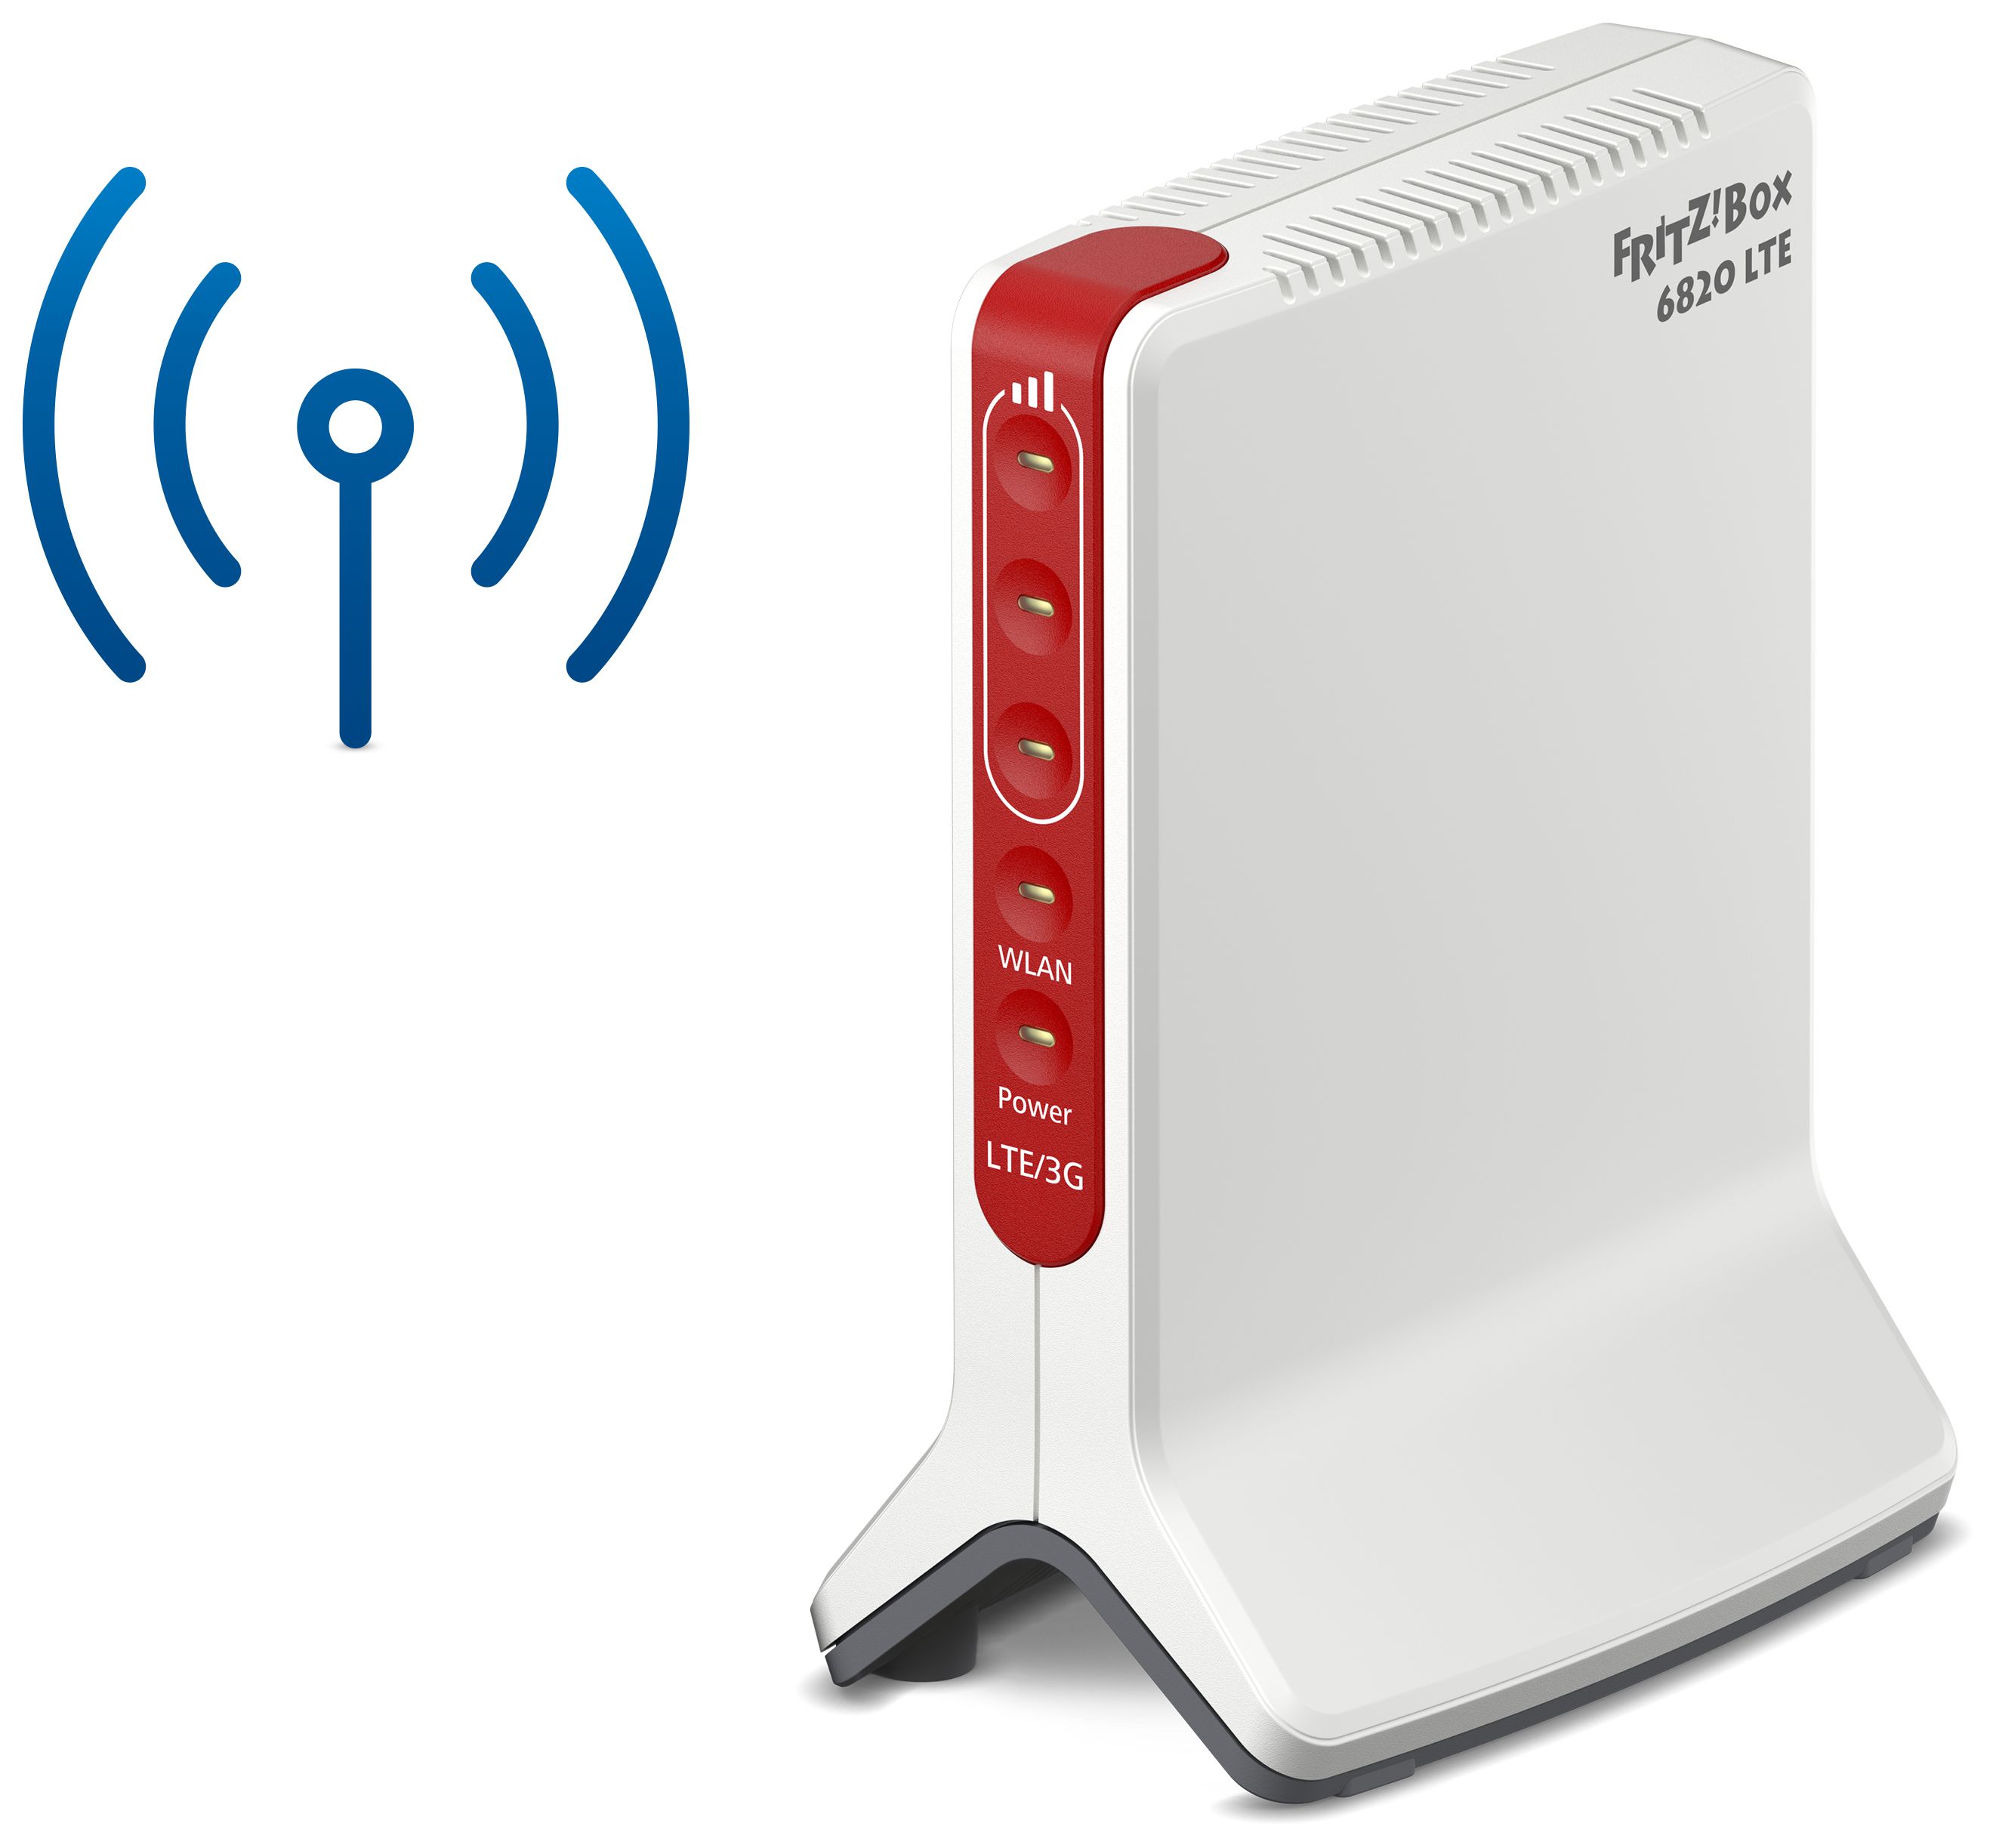 AVM FRITZ!Box 6820 LTE Wi-Fi Einzelband Router Mbit/s 450 Technomarkt 4 (2,4GHz) (802.11n) expert von